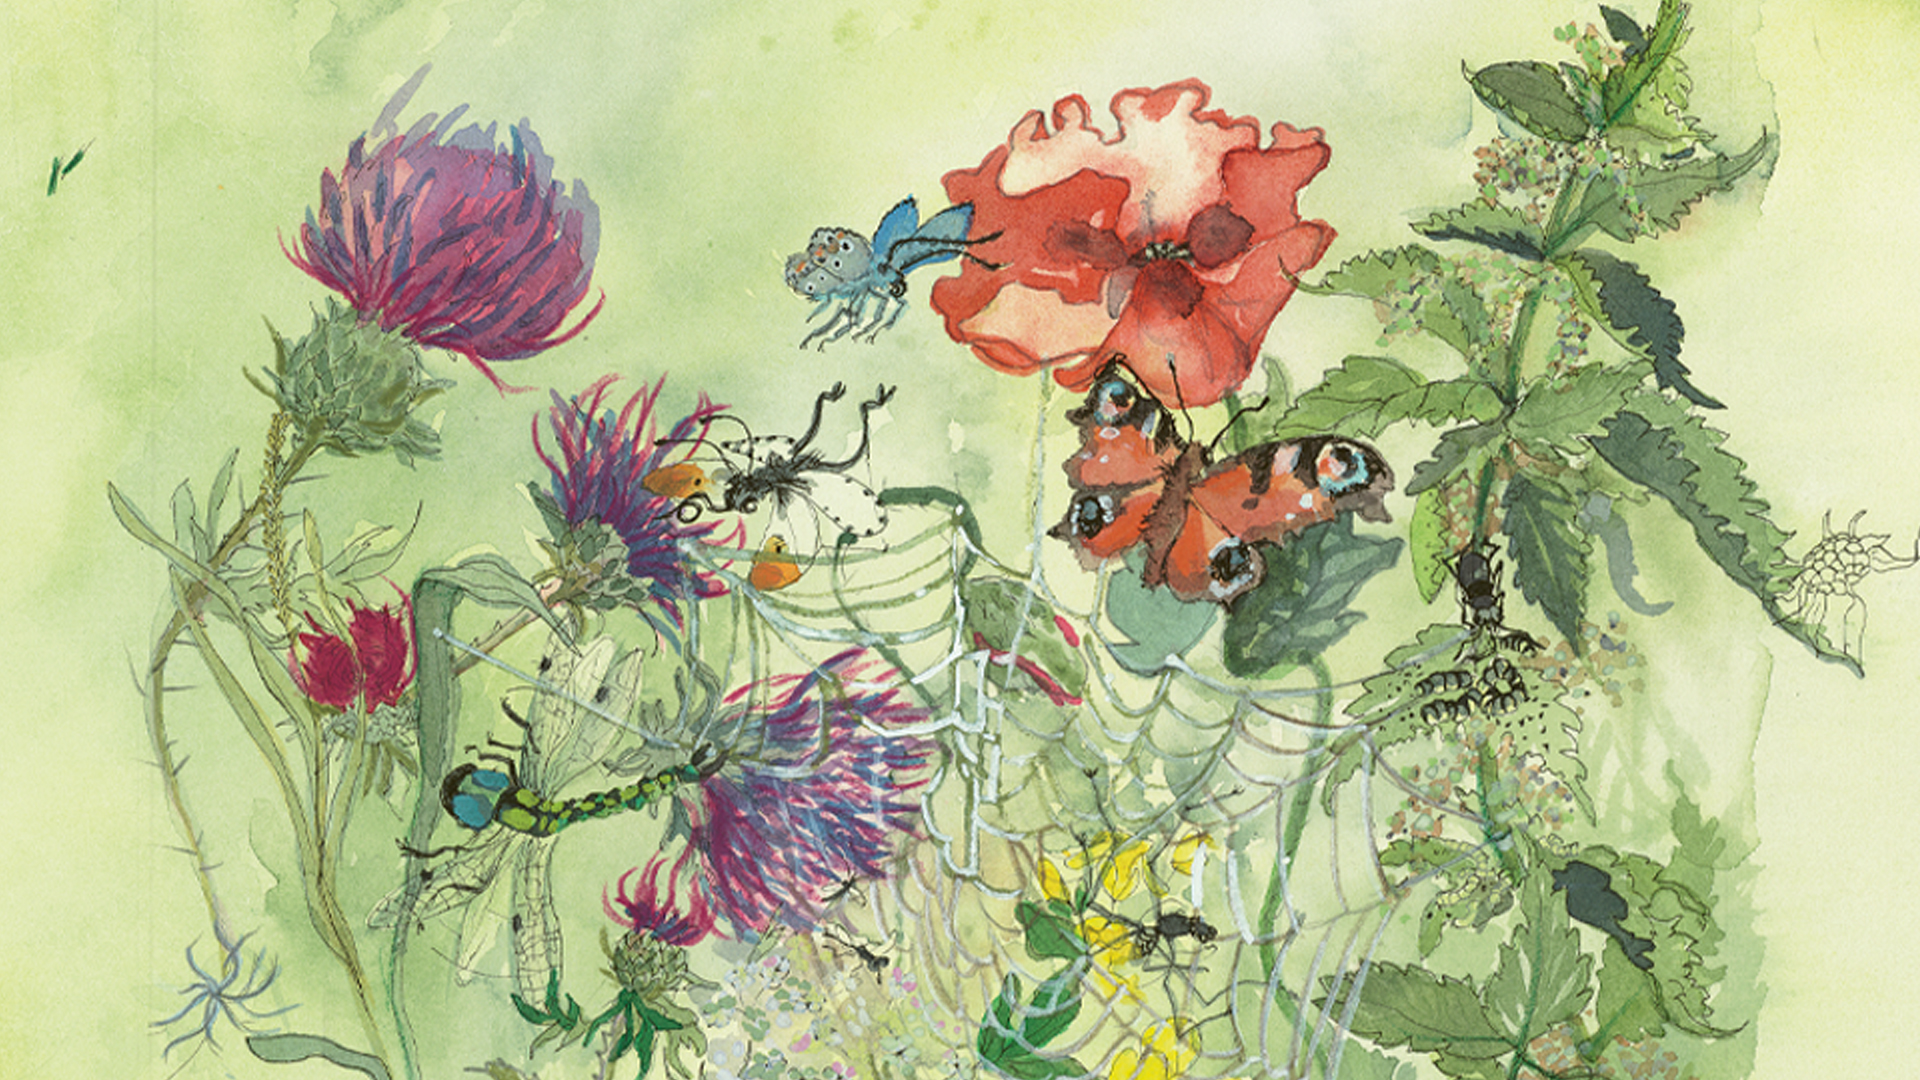 Akvarel med planter og insekter i den vilde have